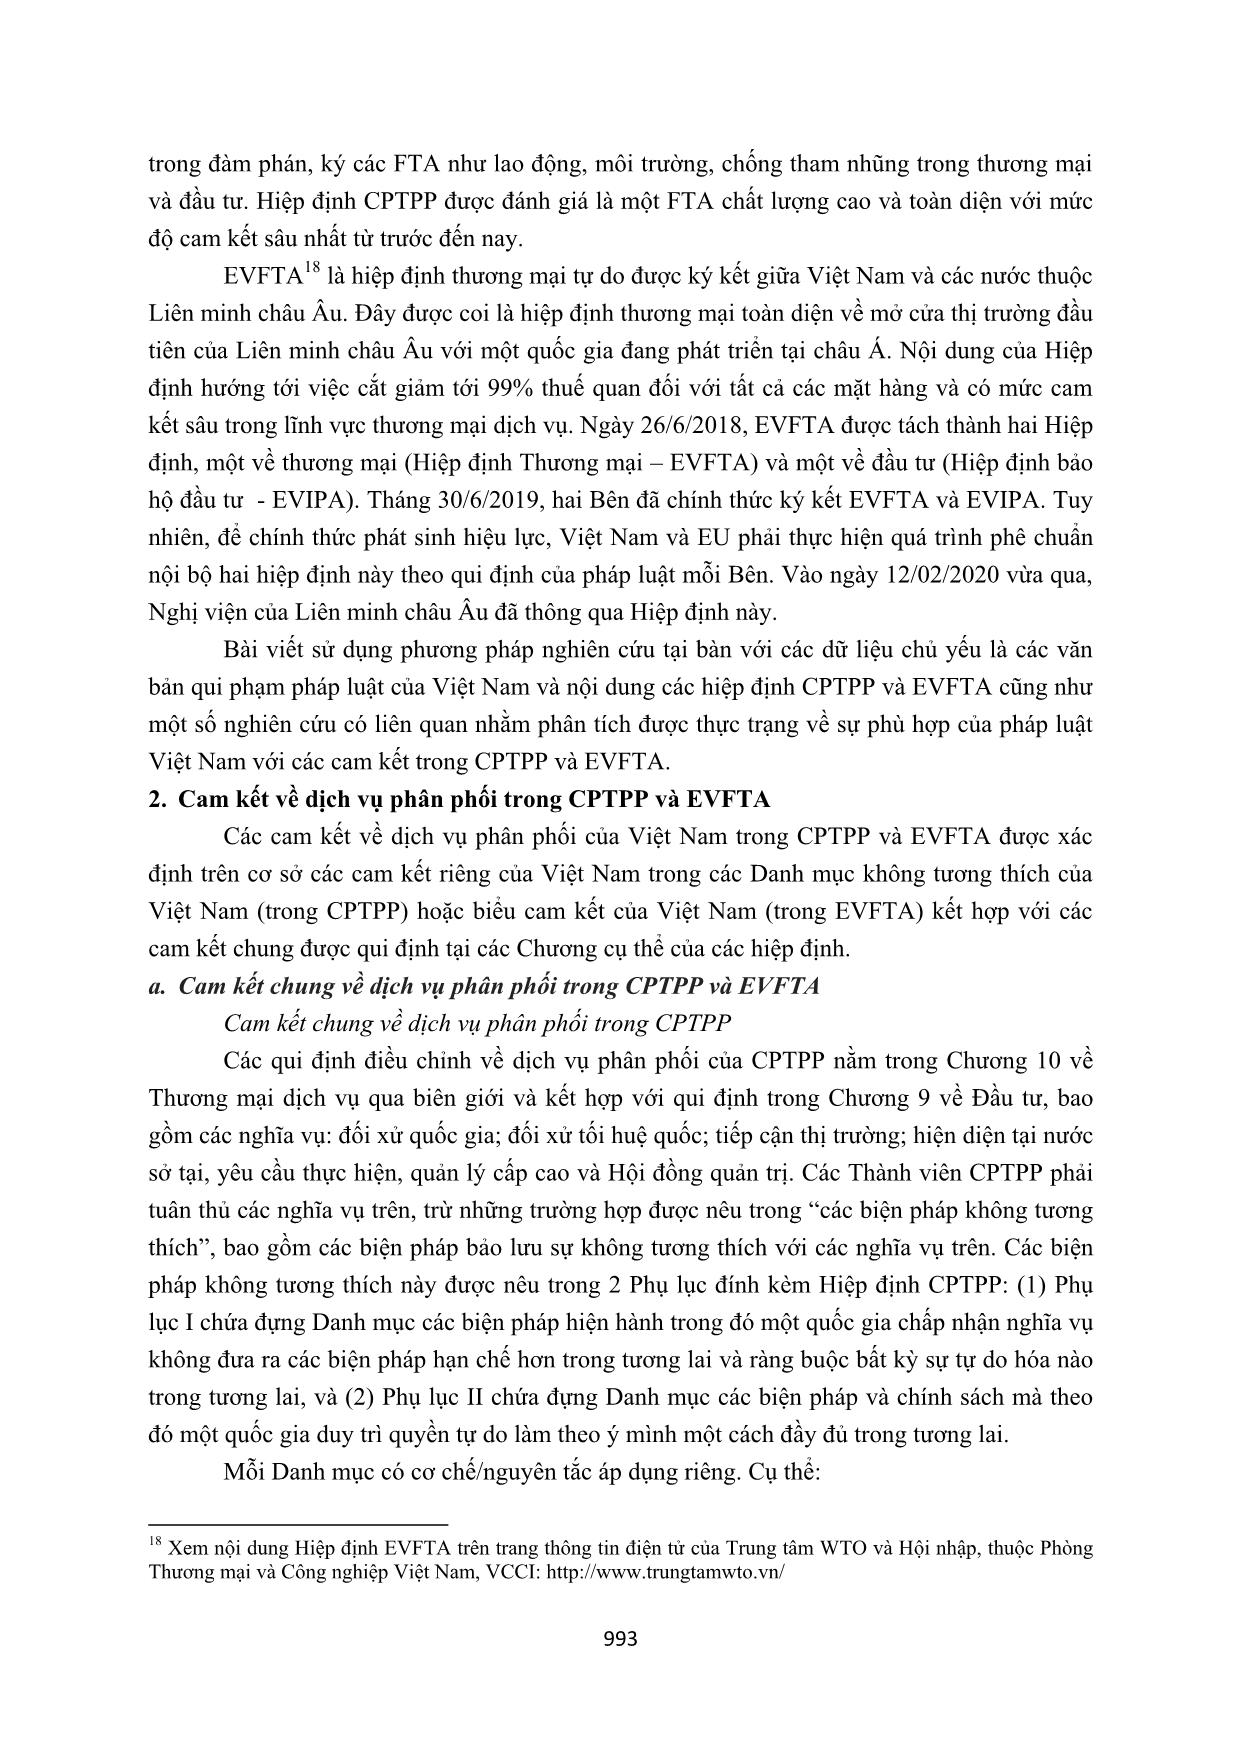 Cam kết về dịch vụ phân phối của Việt Nam tại các hiệp định CPTPP  và EVFTA trong so sánh với pháp luật Việt Nam trang 3